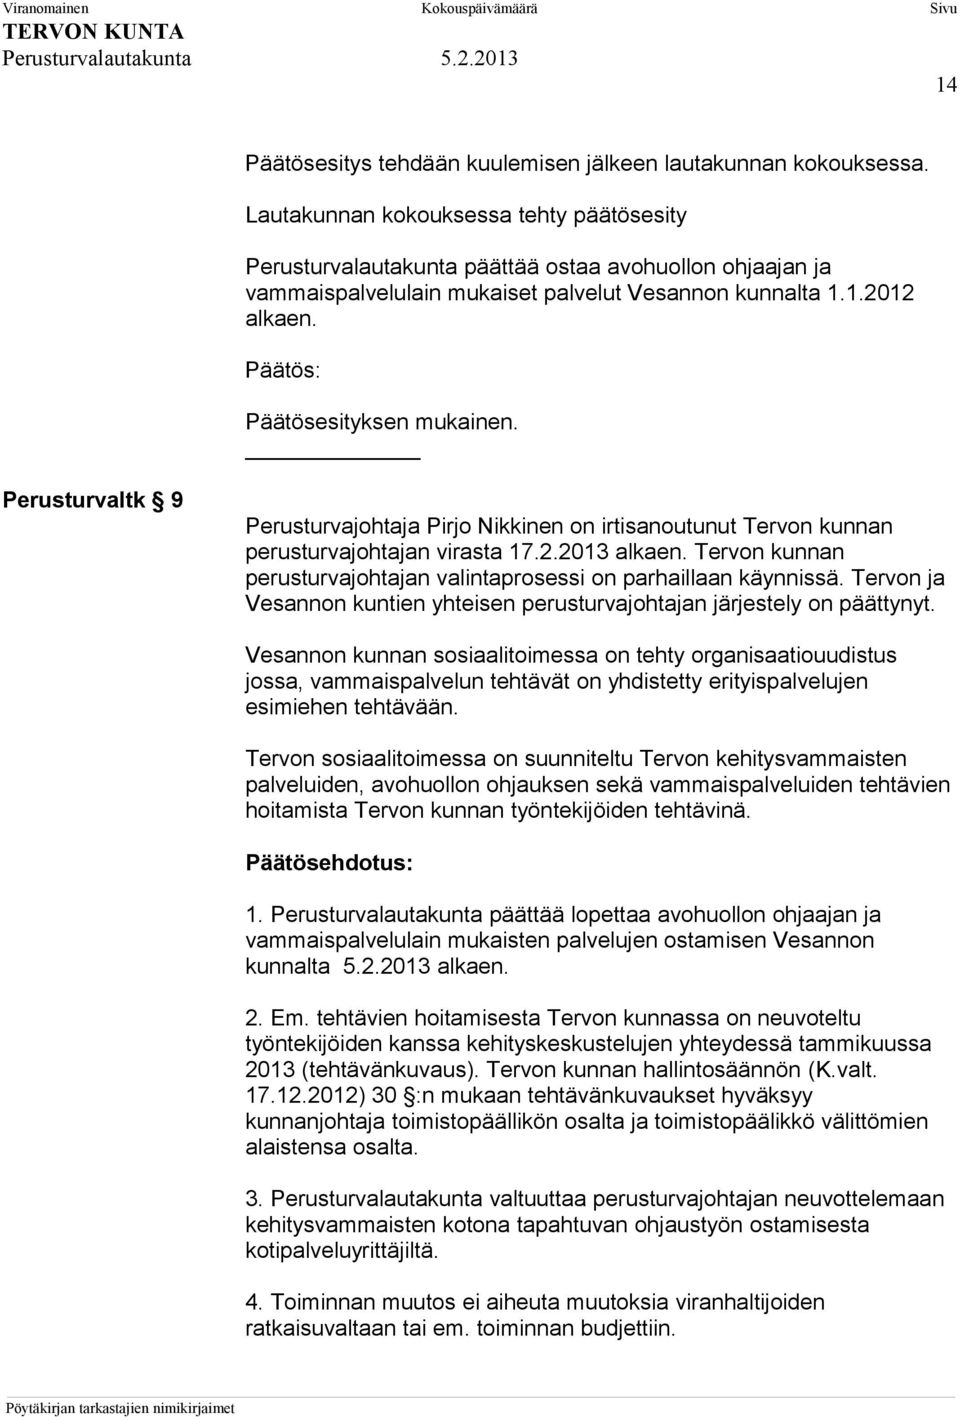 Perusturvaltk 9 Perusturvajohtaja Pirjo Nikkinen on irtisanoutunut Tervon kunnan perusturvajohtajan virasta 17.2.2013 alkaen. Tervon kunnan perusturvajohtajan valintaprosessi on parhaillaan käynnissä.